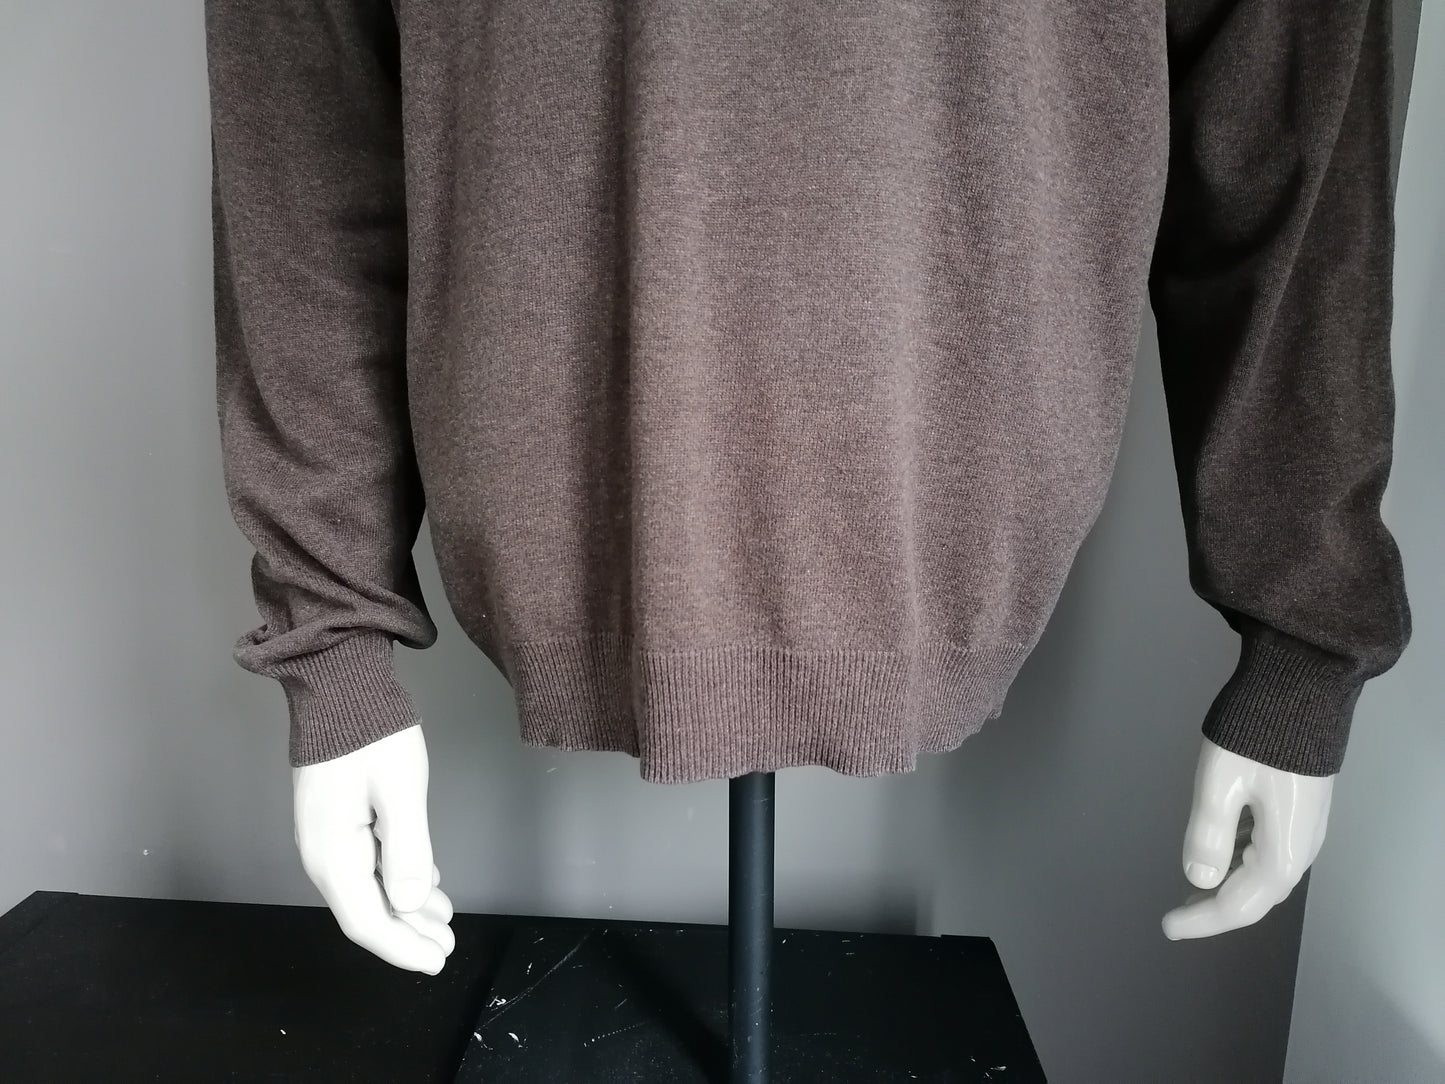 Suéter de algodón del sistema al aire libre. Color marrón. Tamaño XXL / 2XL